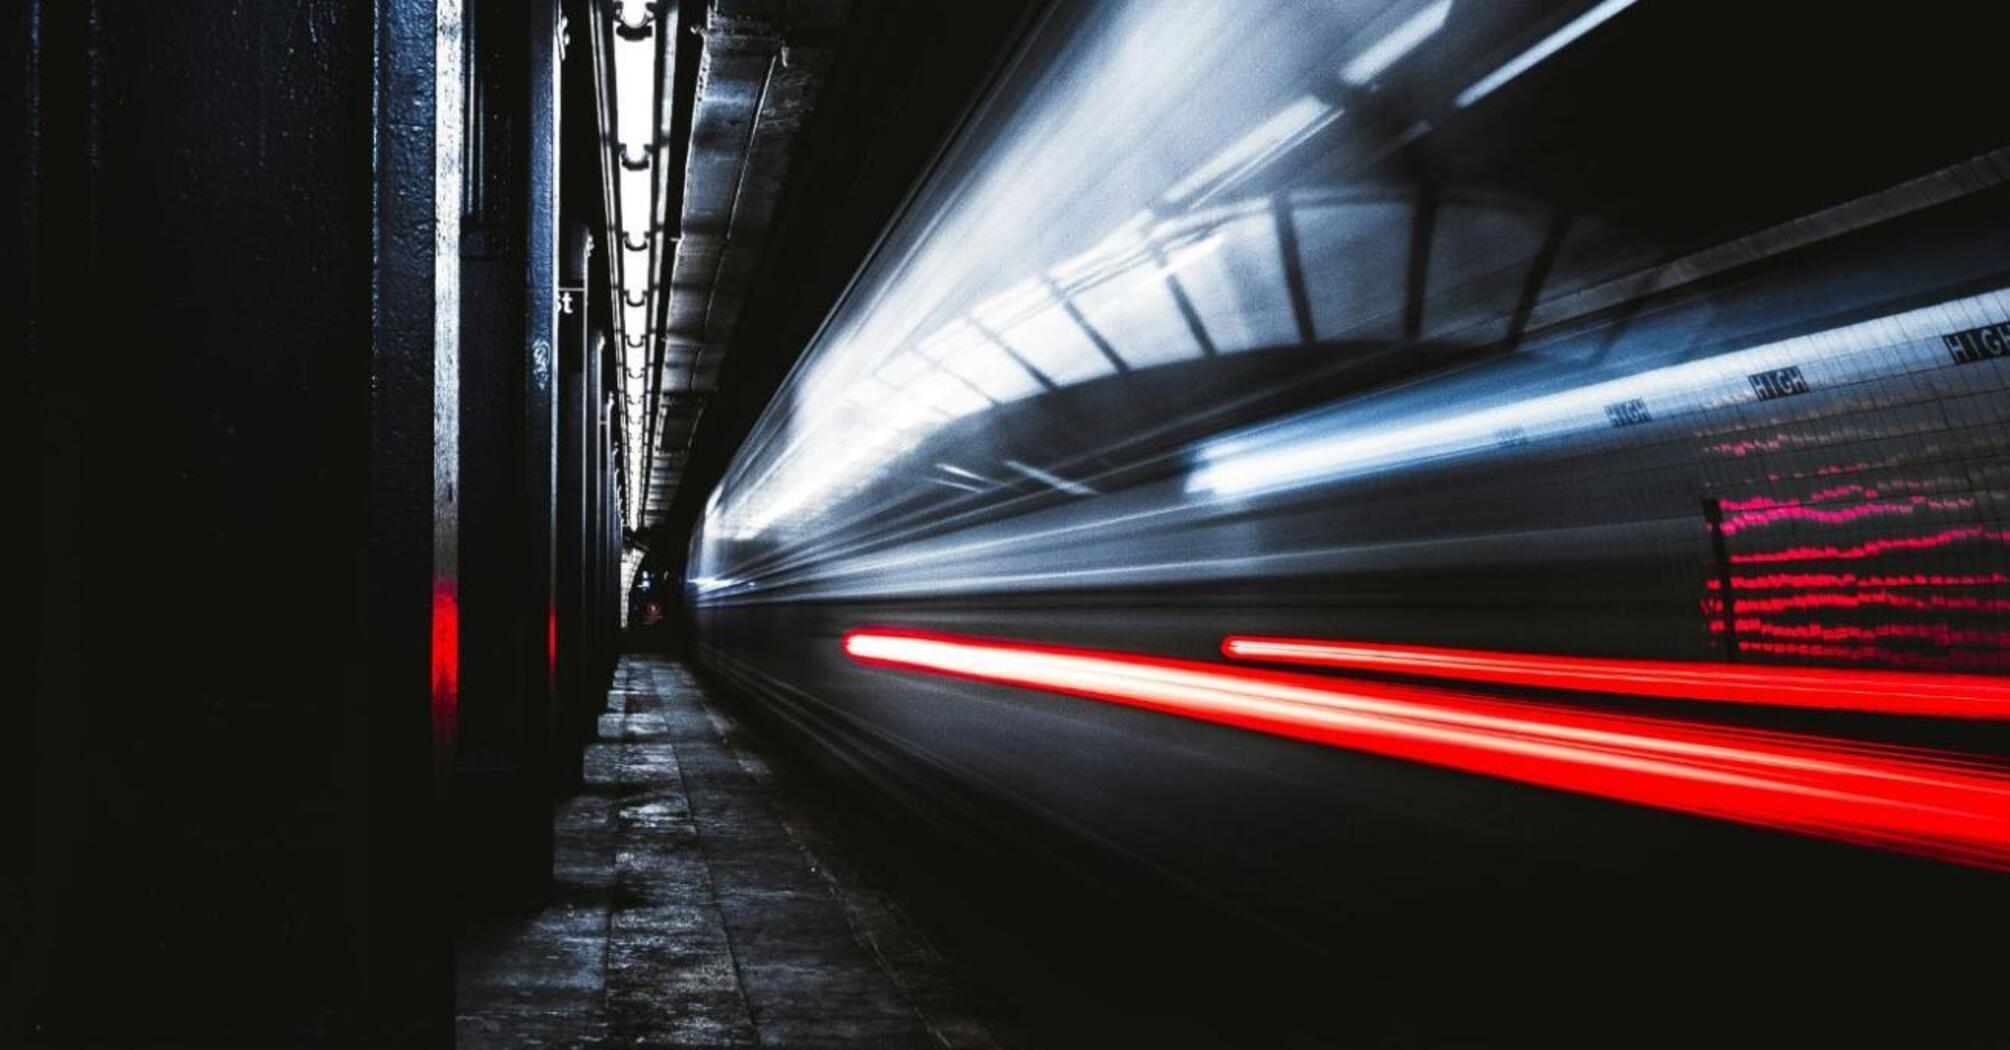 A train at high speed passes through a dark underground tunnel